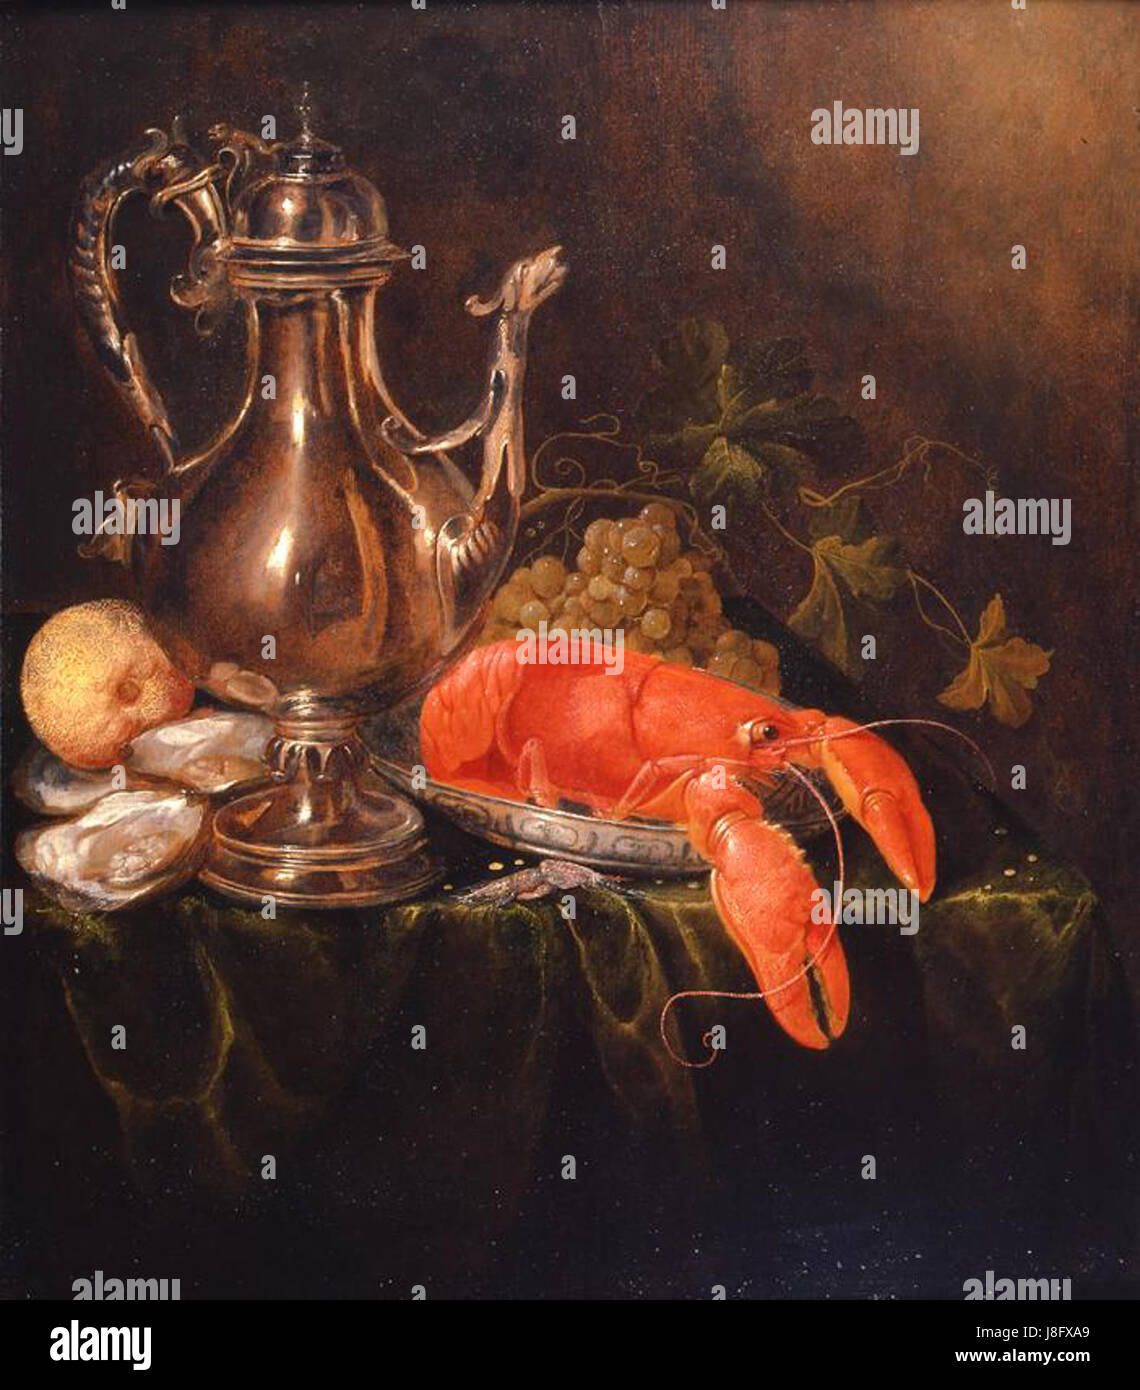 Jasper Geeraerts ancora una vita con un argento ewer, una aragosta su una piastra di porcellana, gamberi, ostriche, un limone e uva Foto Stock